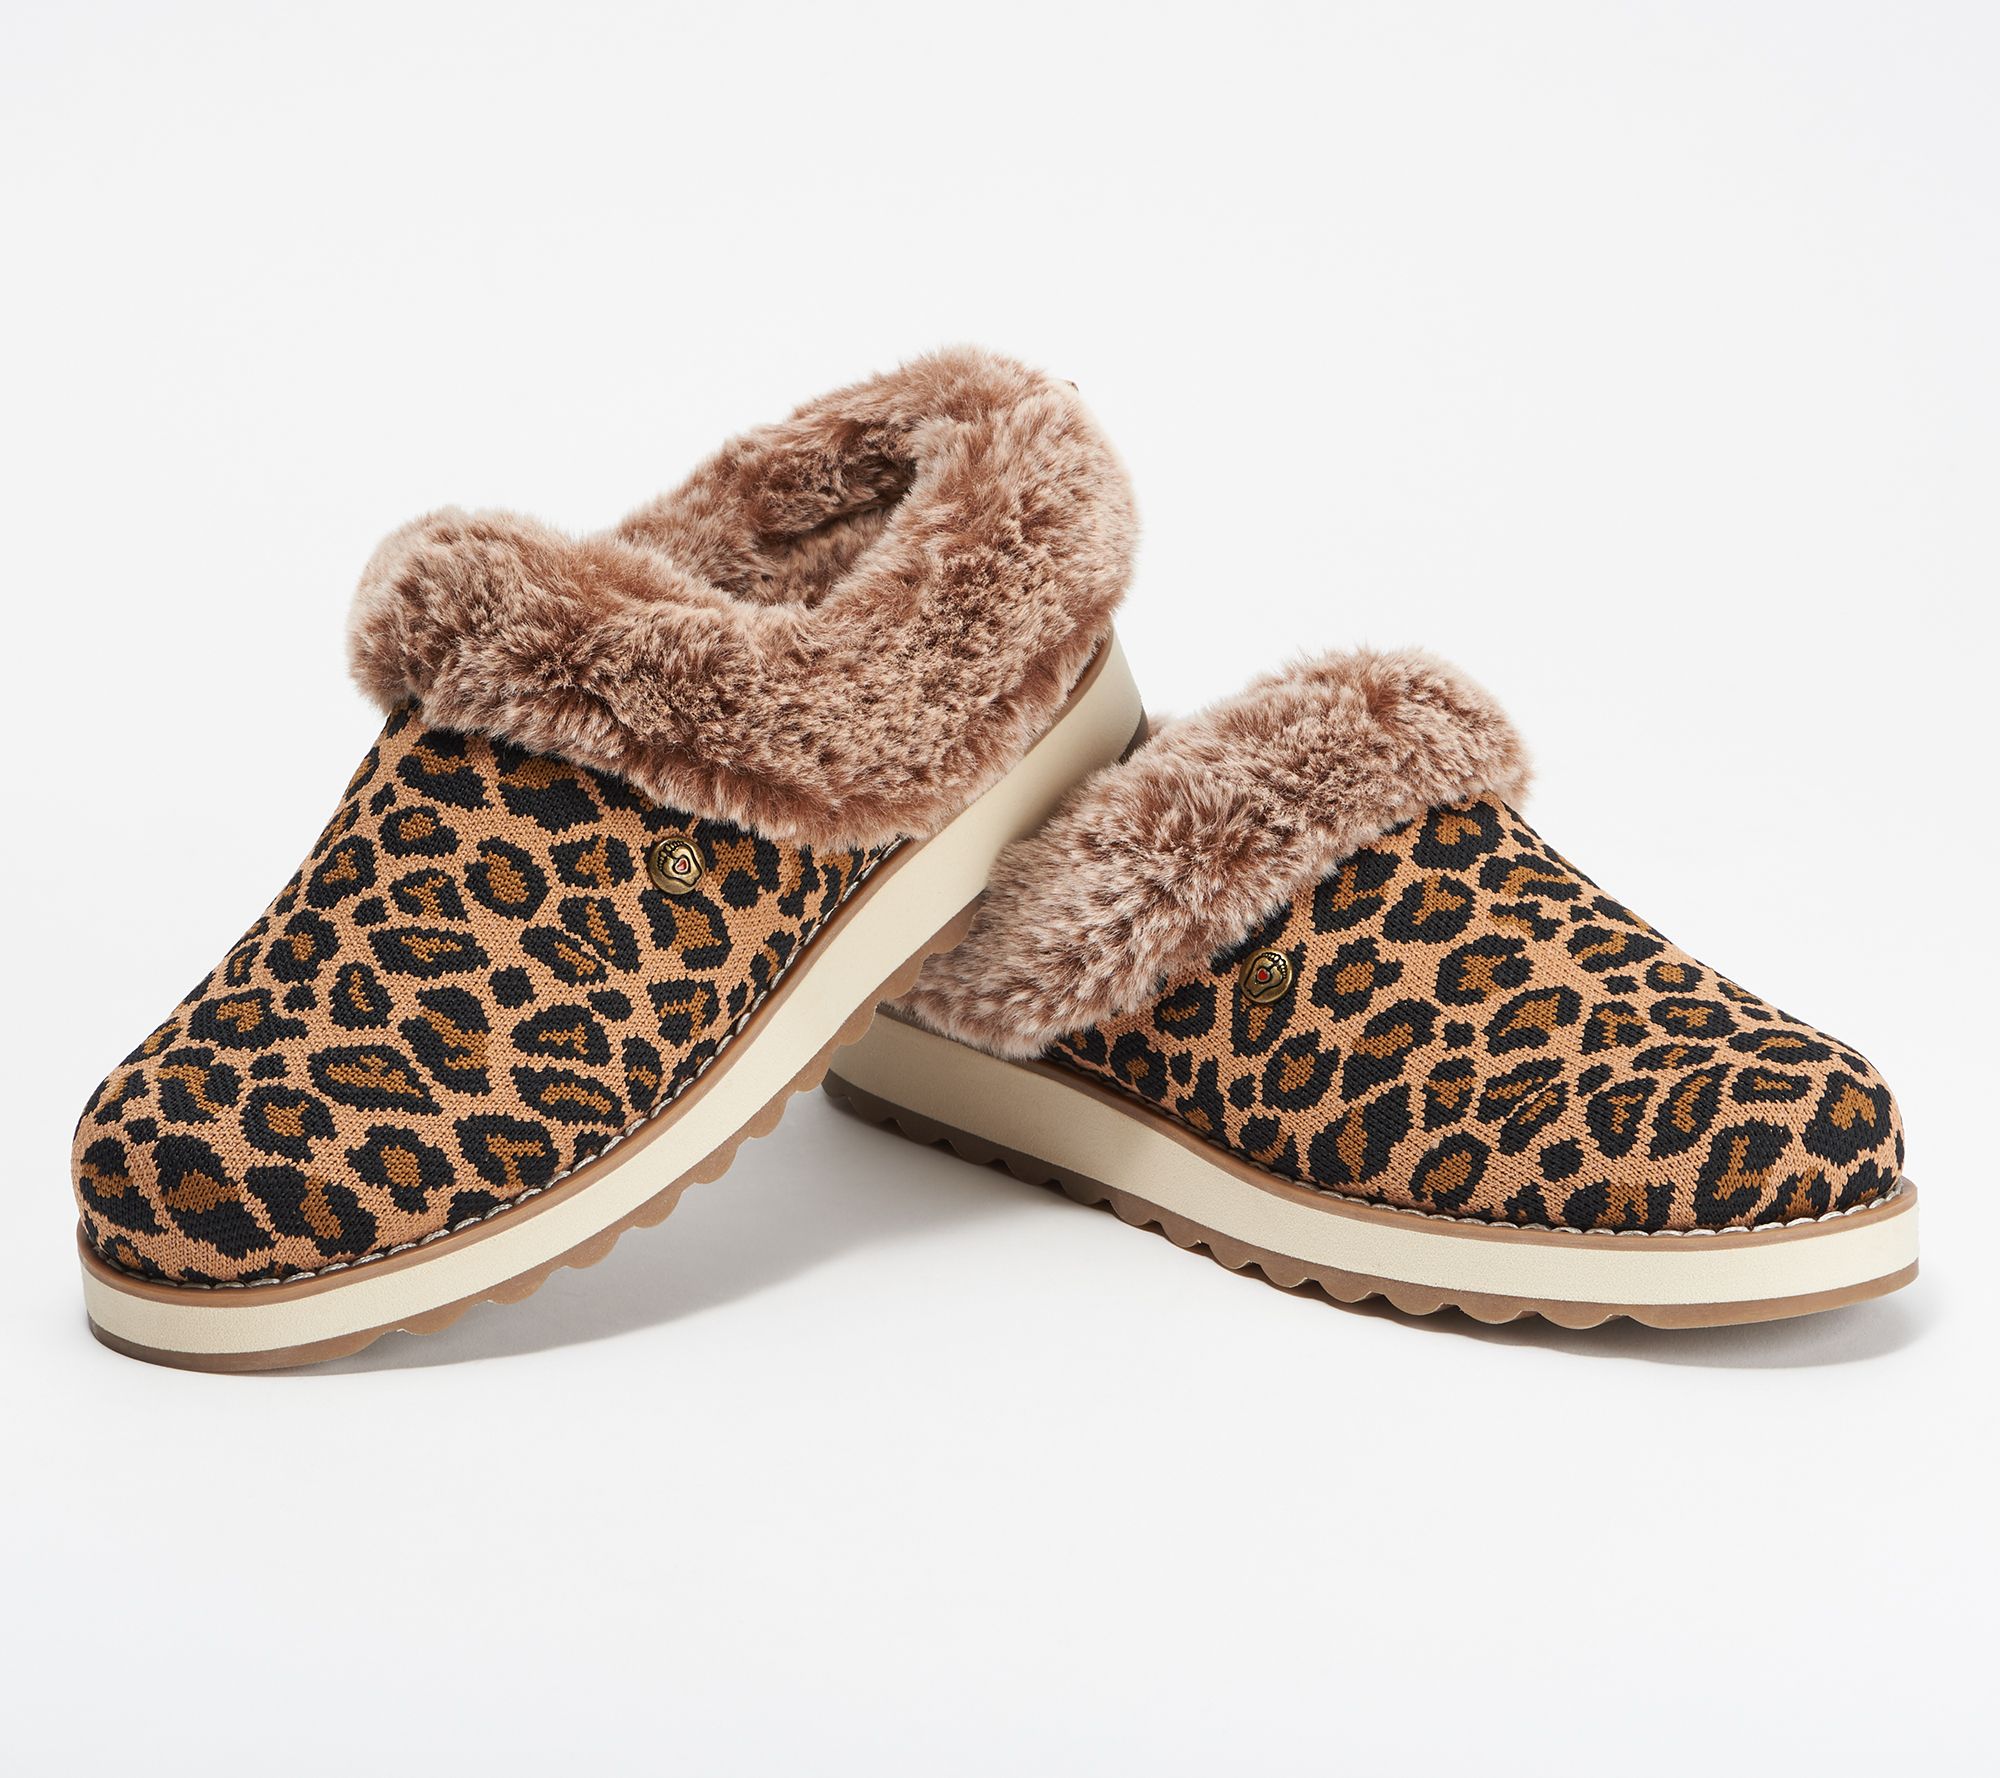 leopard skin slippers